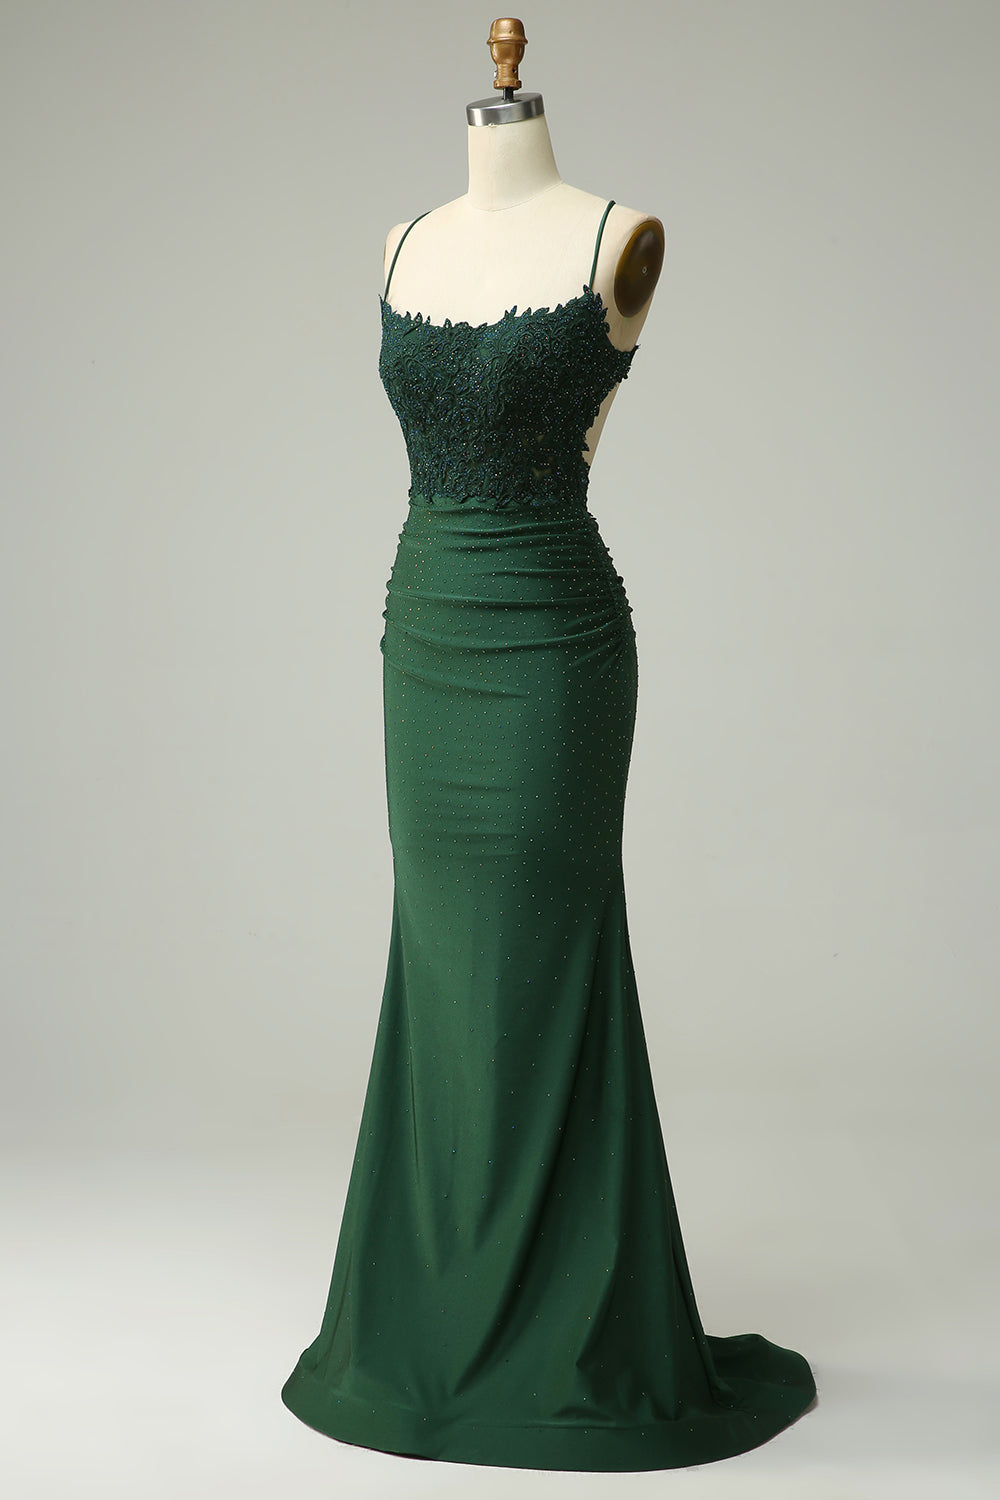 Prom Dress Casual, Mermaid Dark Green Satin Spaghetti Straps Prom Dress